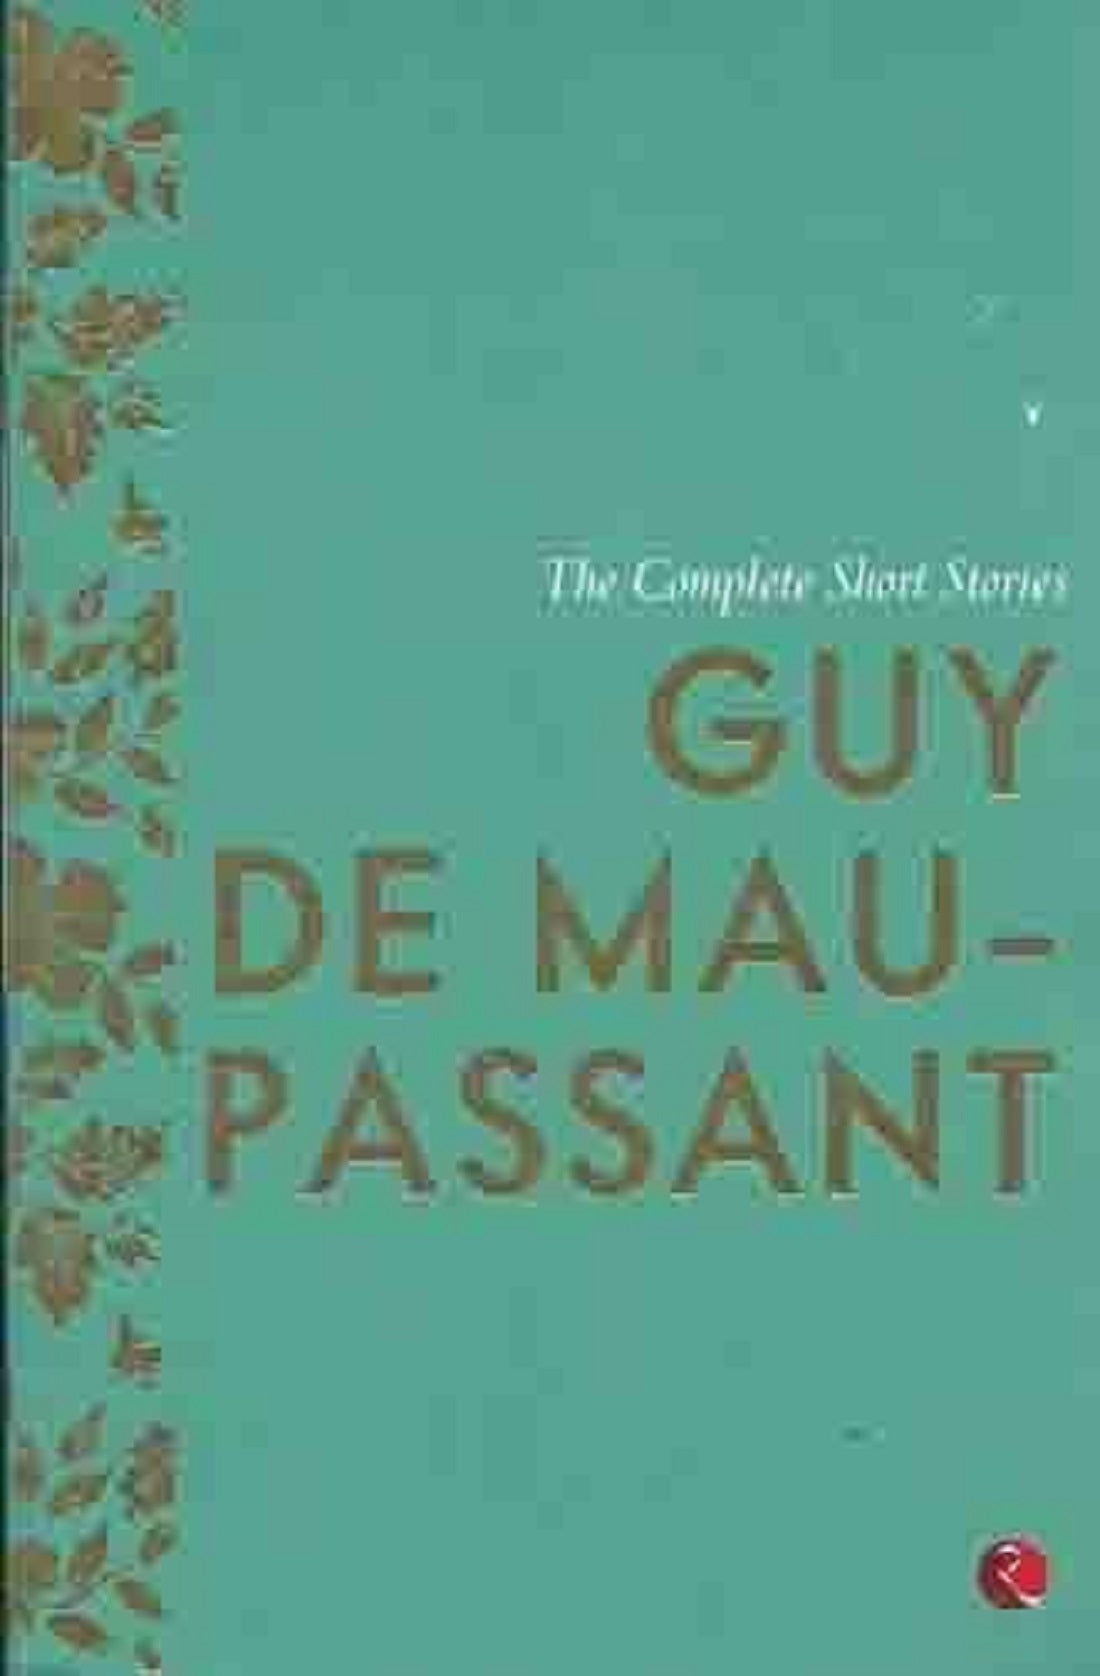 THE COMPLETE SHORT STORIES GUY DE MAUPASSANT